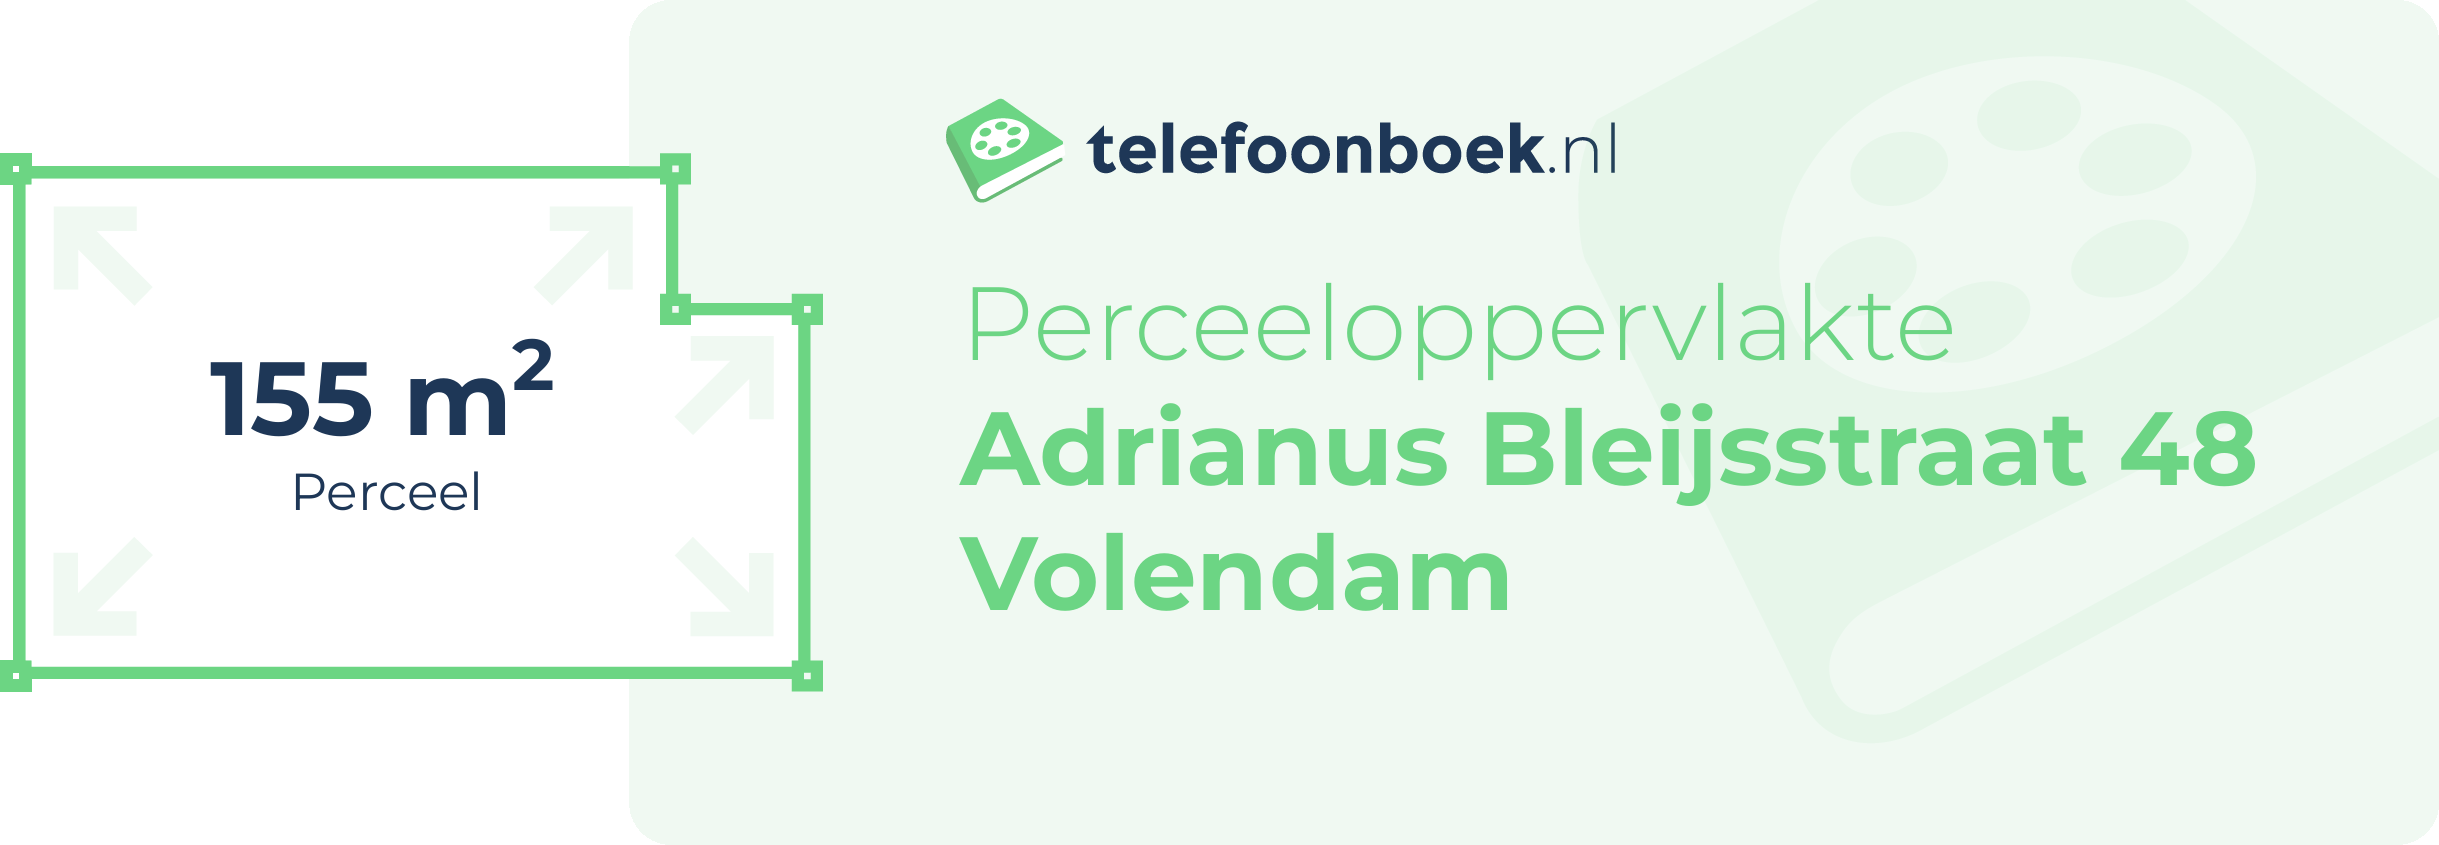 Perceeloppervlakte Adrianus Bleijsstraat 48 Volendam